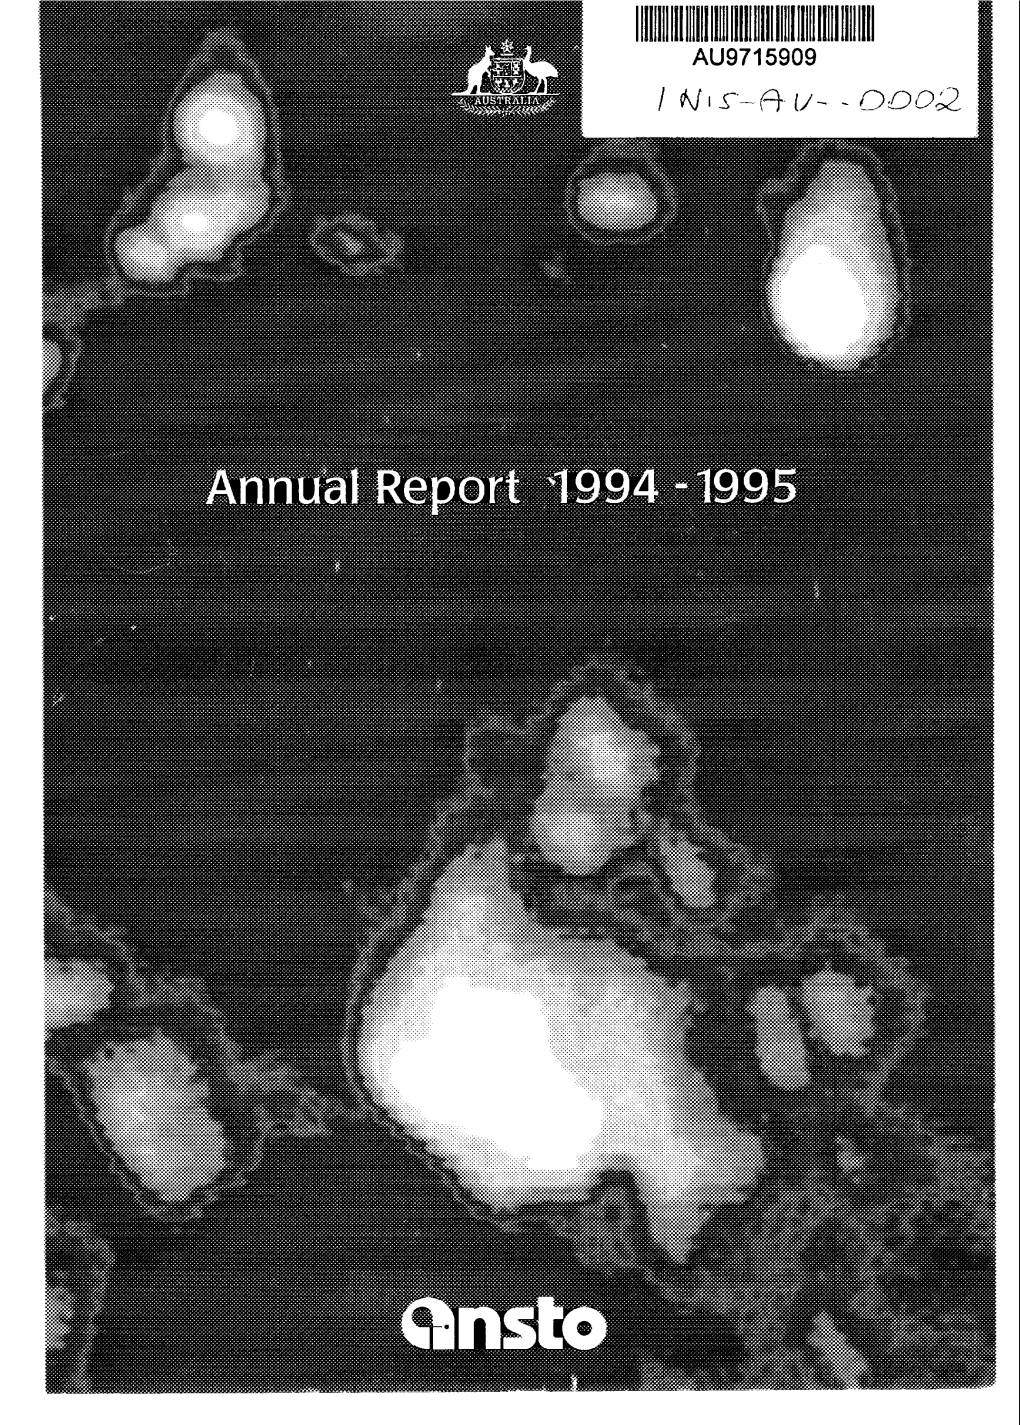 ANSTO. Annual Report 1994-1995